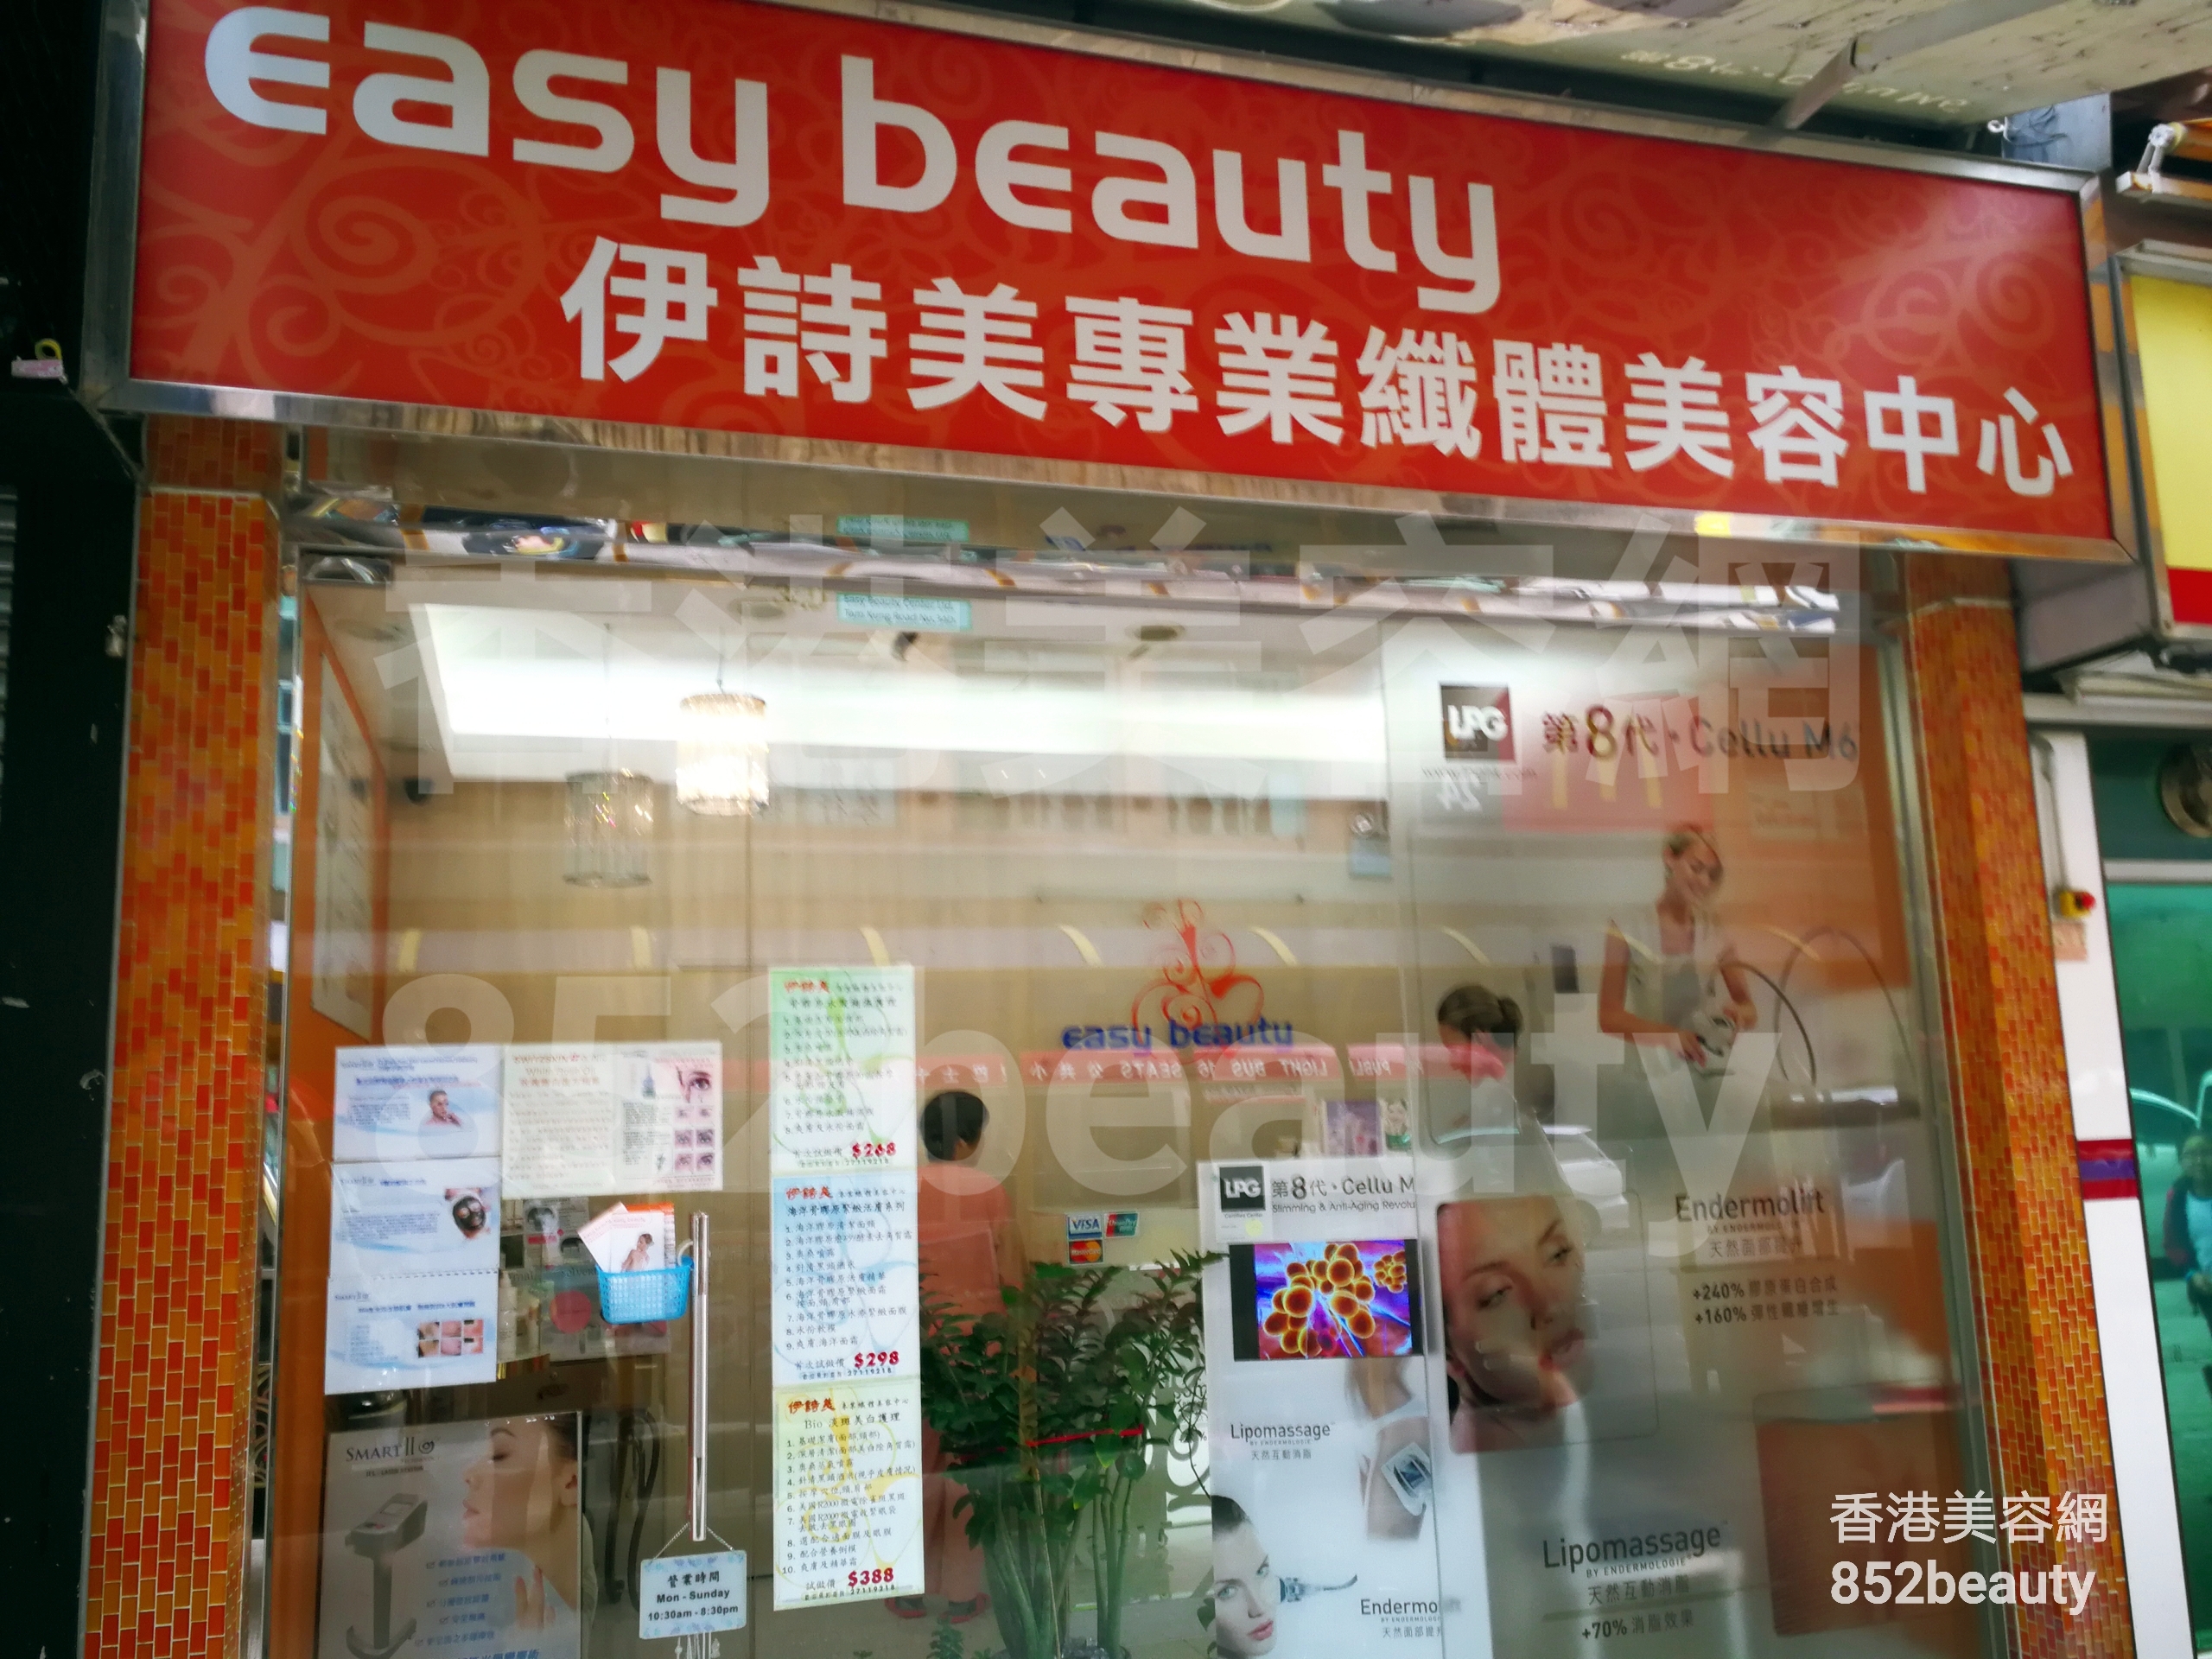 香港美容網 Hong Kong Beauty Salon 美容院 / 美容師: Easy beauty 伊詩美專業纖體美容中心